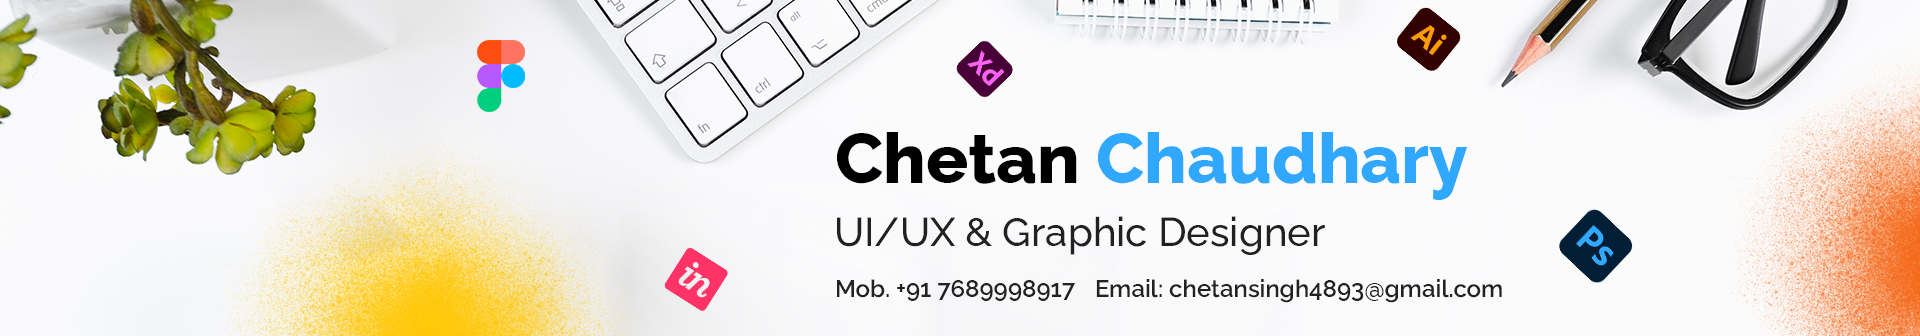 Banner de perfil de Chetan Chaudhary